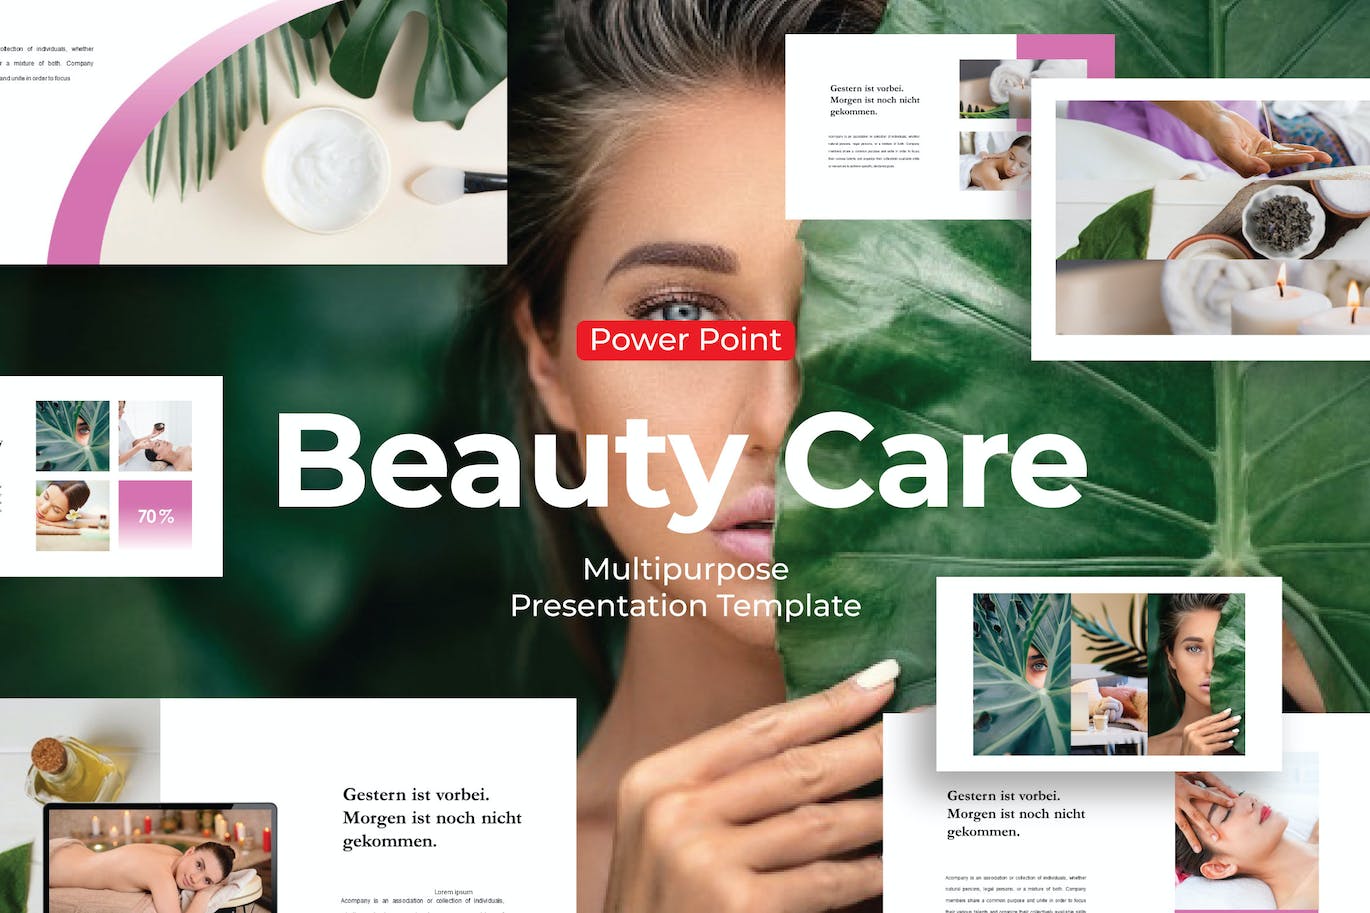 美容护理业务PPT素材 Beauty Care – PowerPoint Template 幻灯图表 第1张